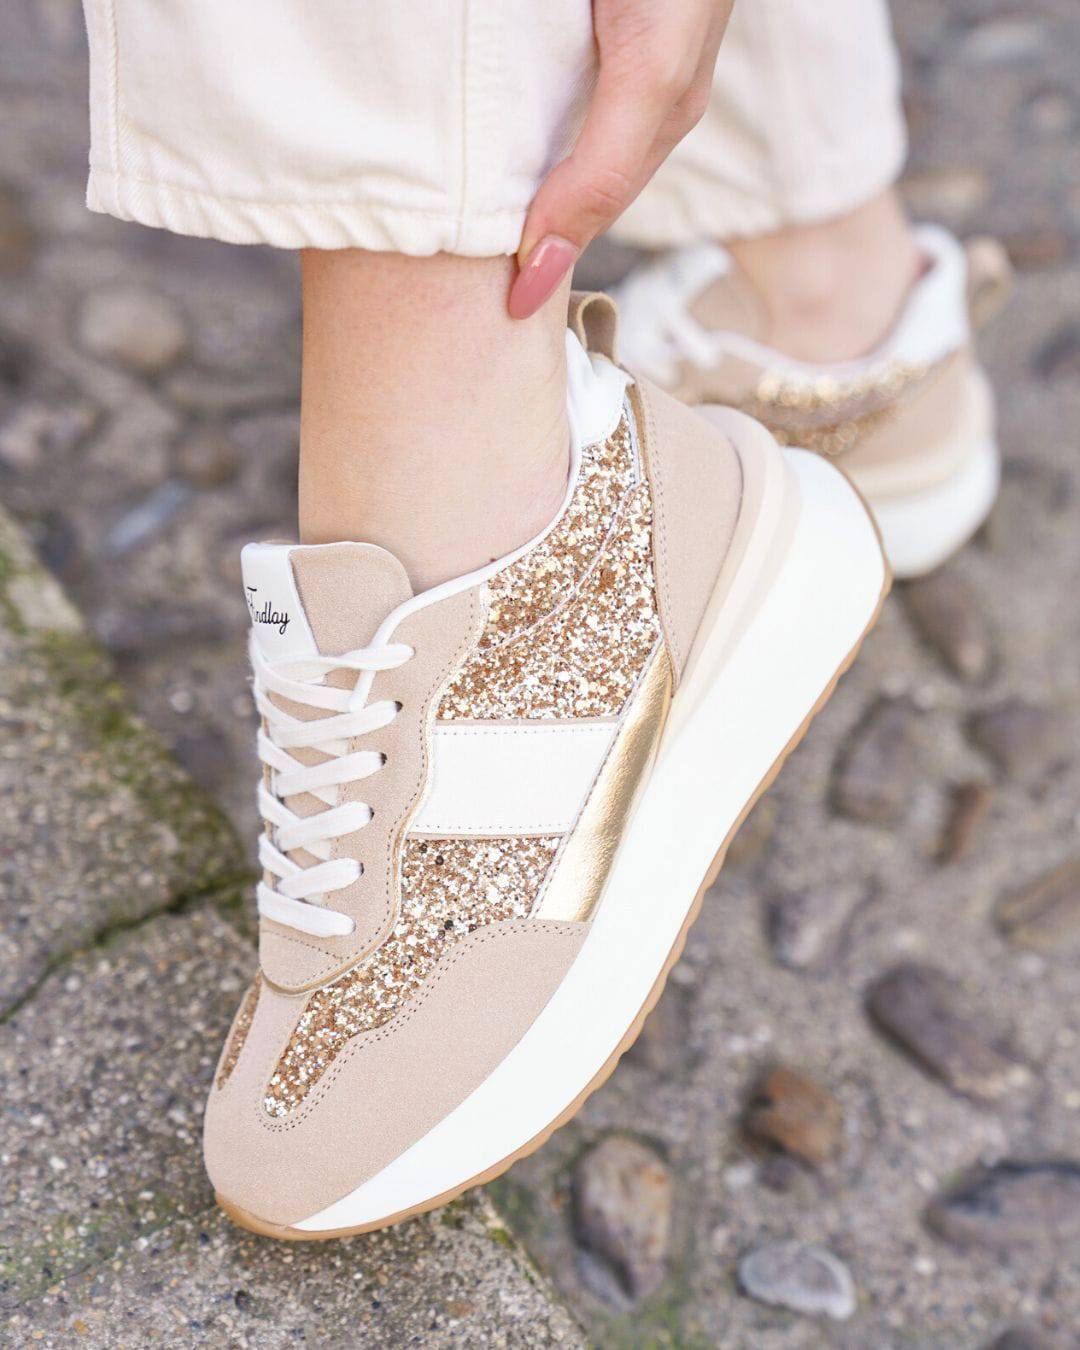 Damen-Sneaker in Gold mit Schnürsenkeln und dicker Sohle - Safia - Casualmode.de